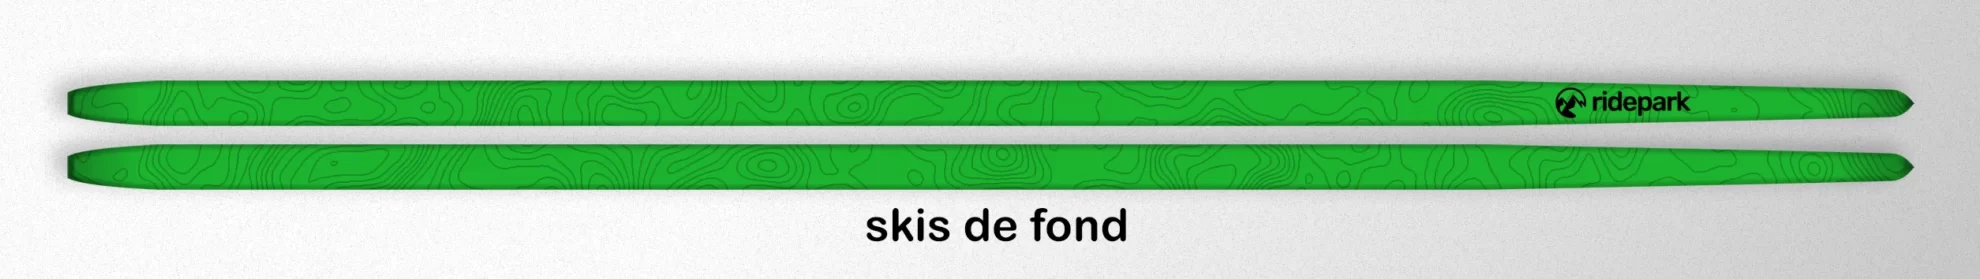 types de ski